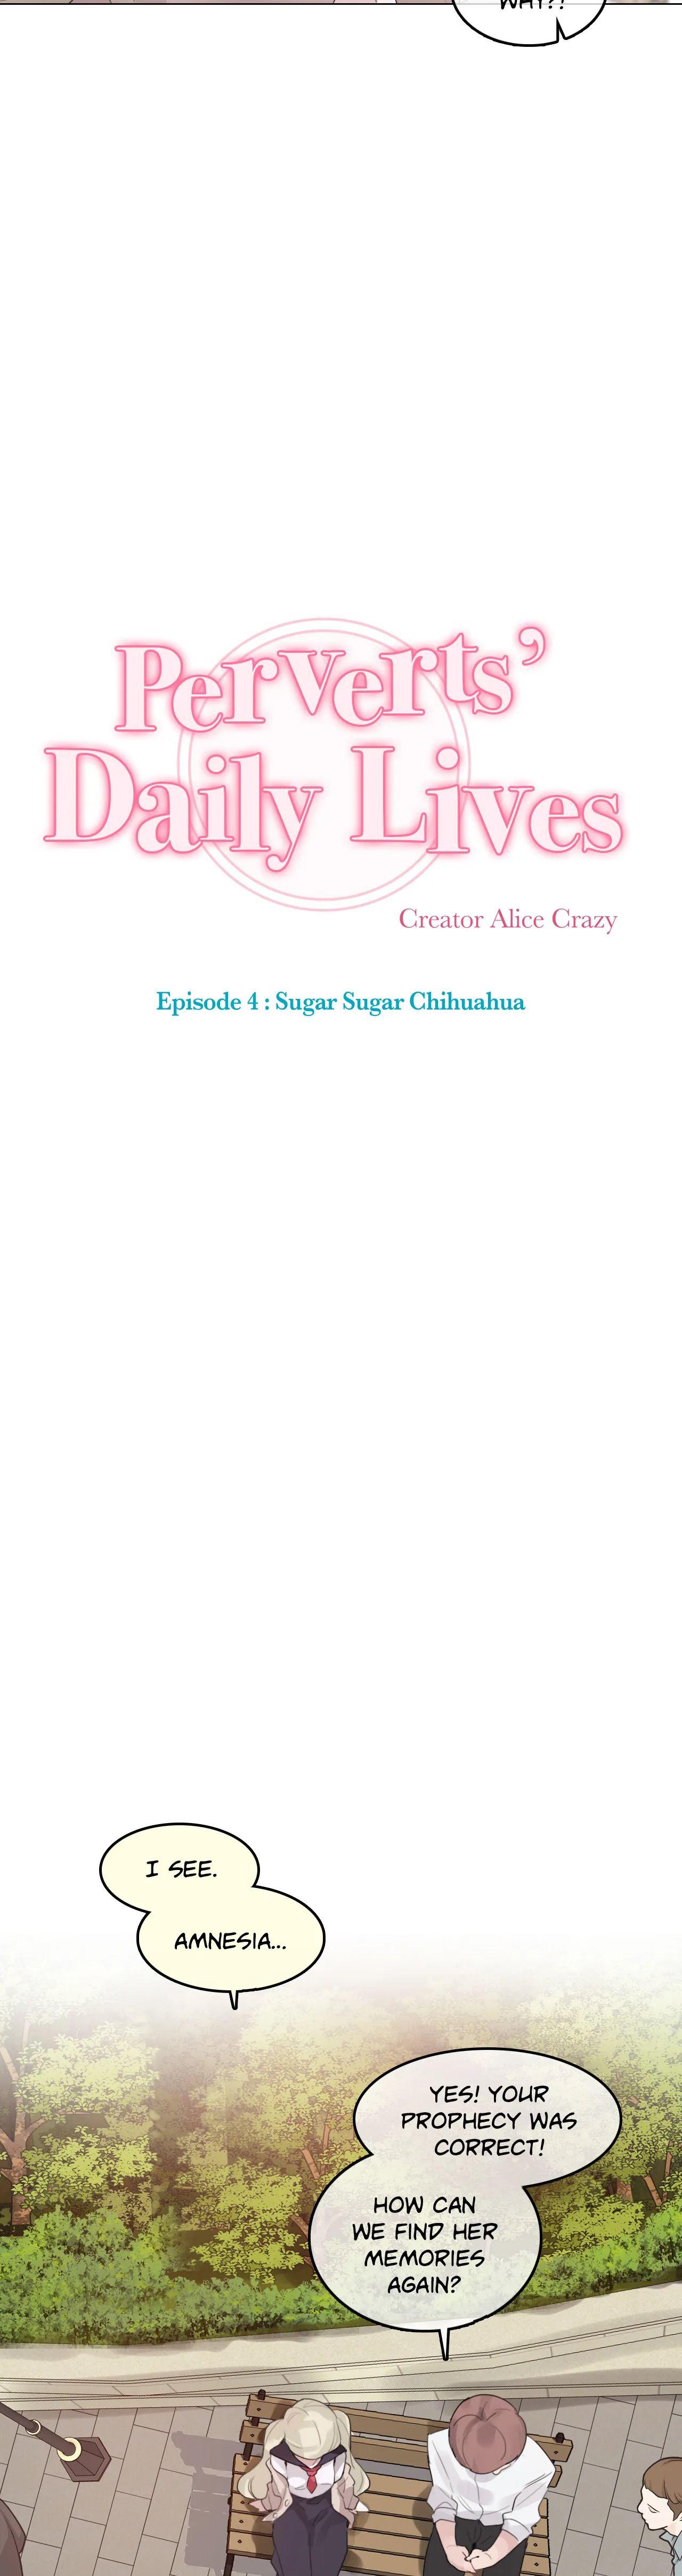 Perverts' Daily Lives Episode 4: Sugar Sugar Chihuahua 319